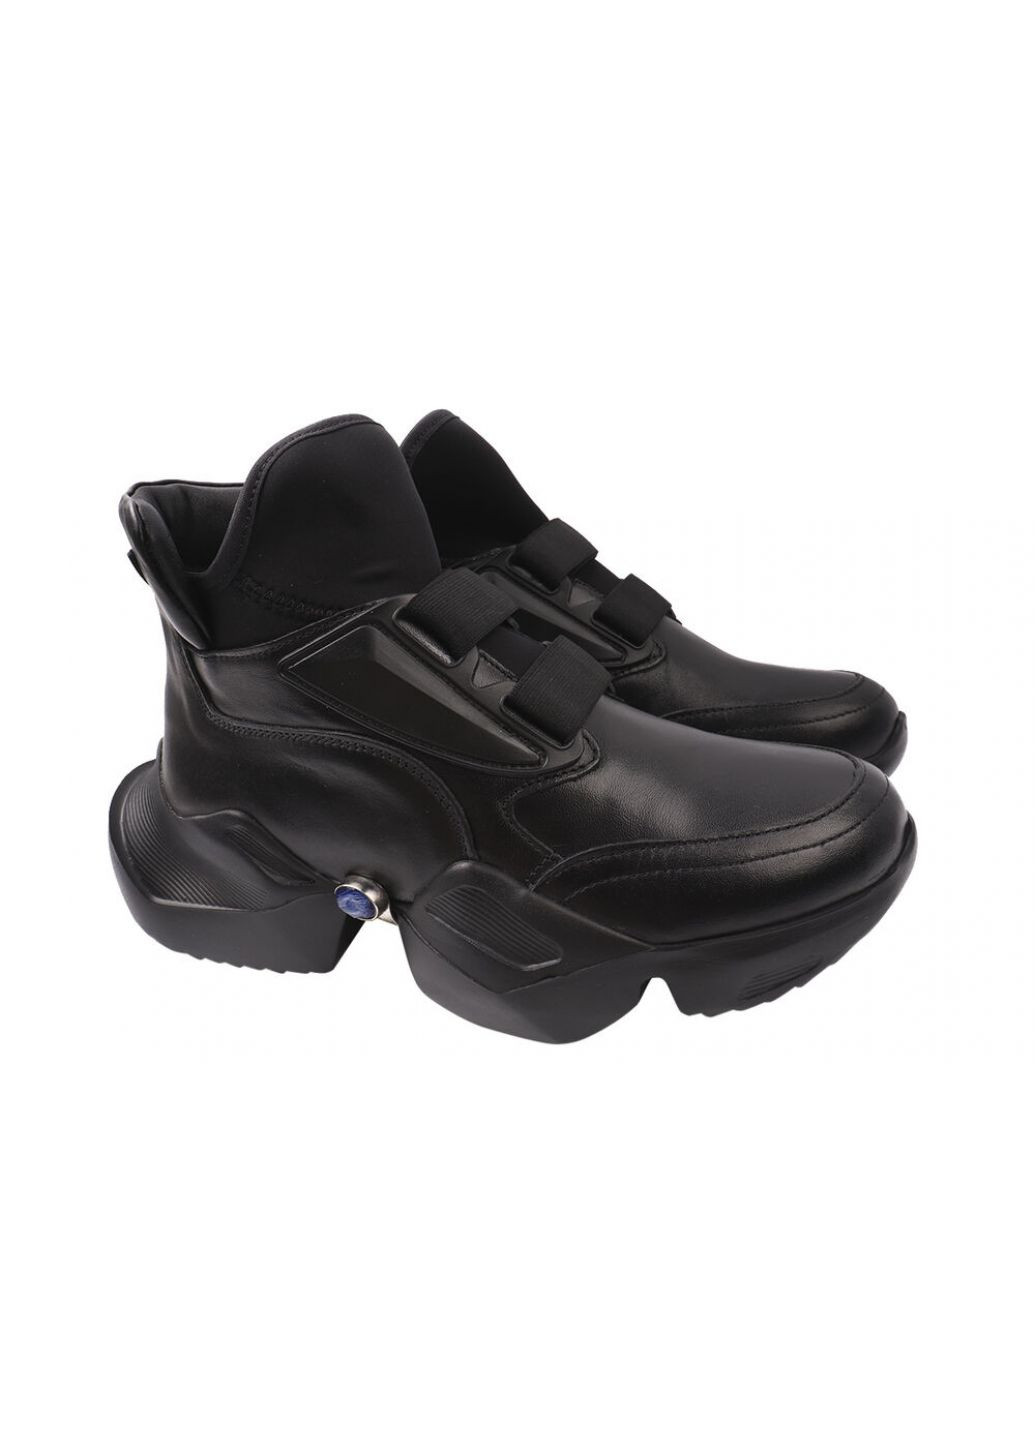 Черные ботинки женские из натуральной кожы,на платформе,высокие,черные,на резинке,турция Molly Bessa 236-20DK